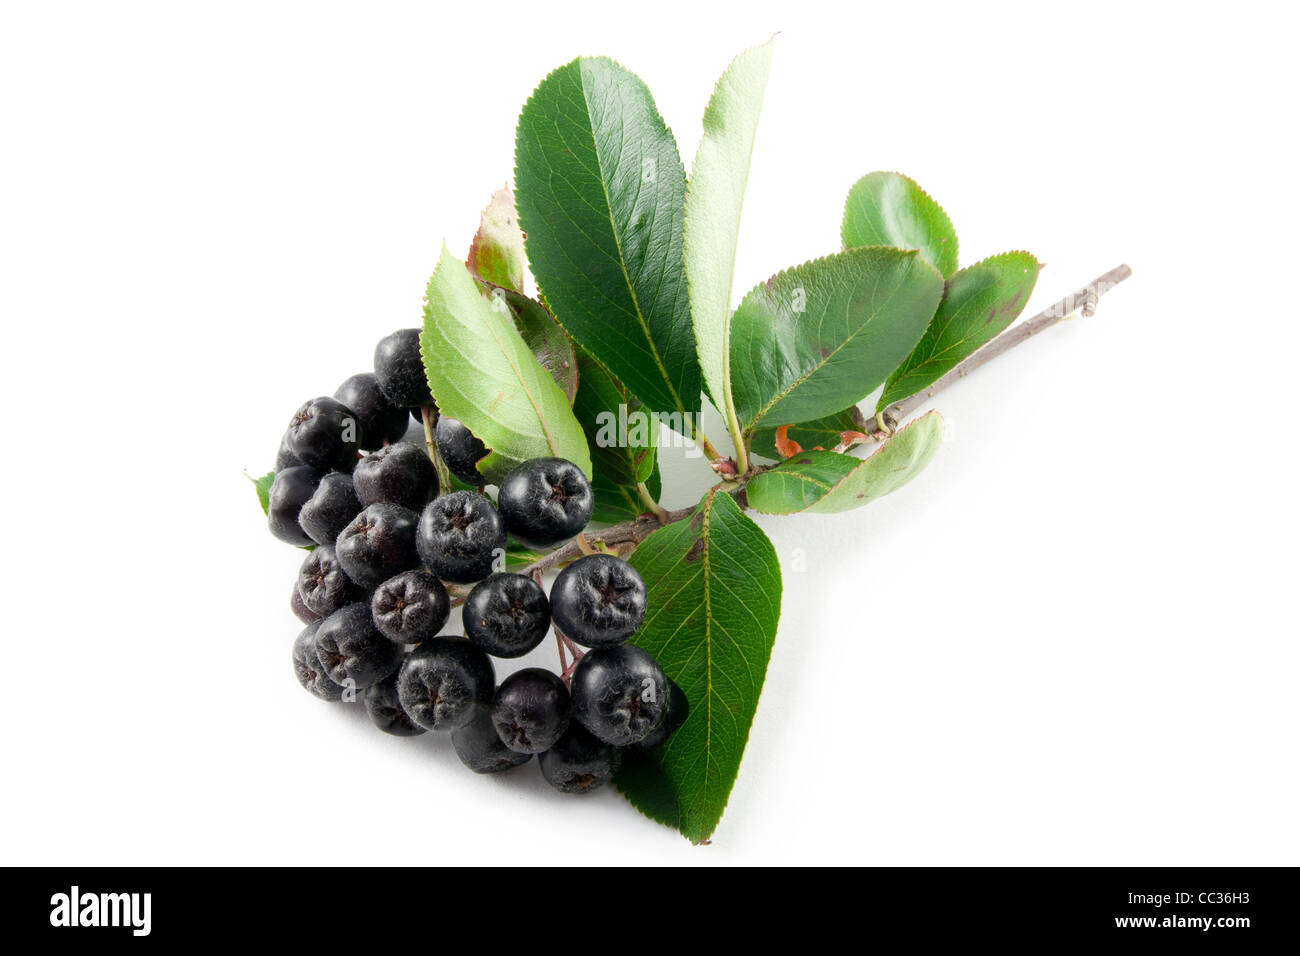 Black Aronia berries on a white background Stock Photo